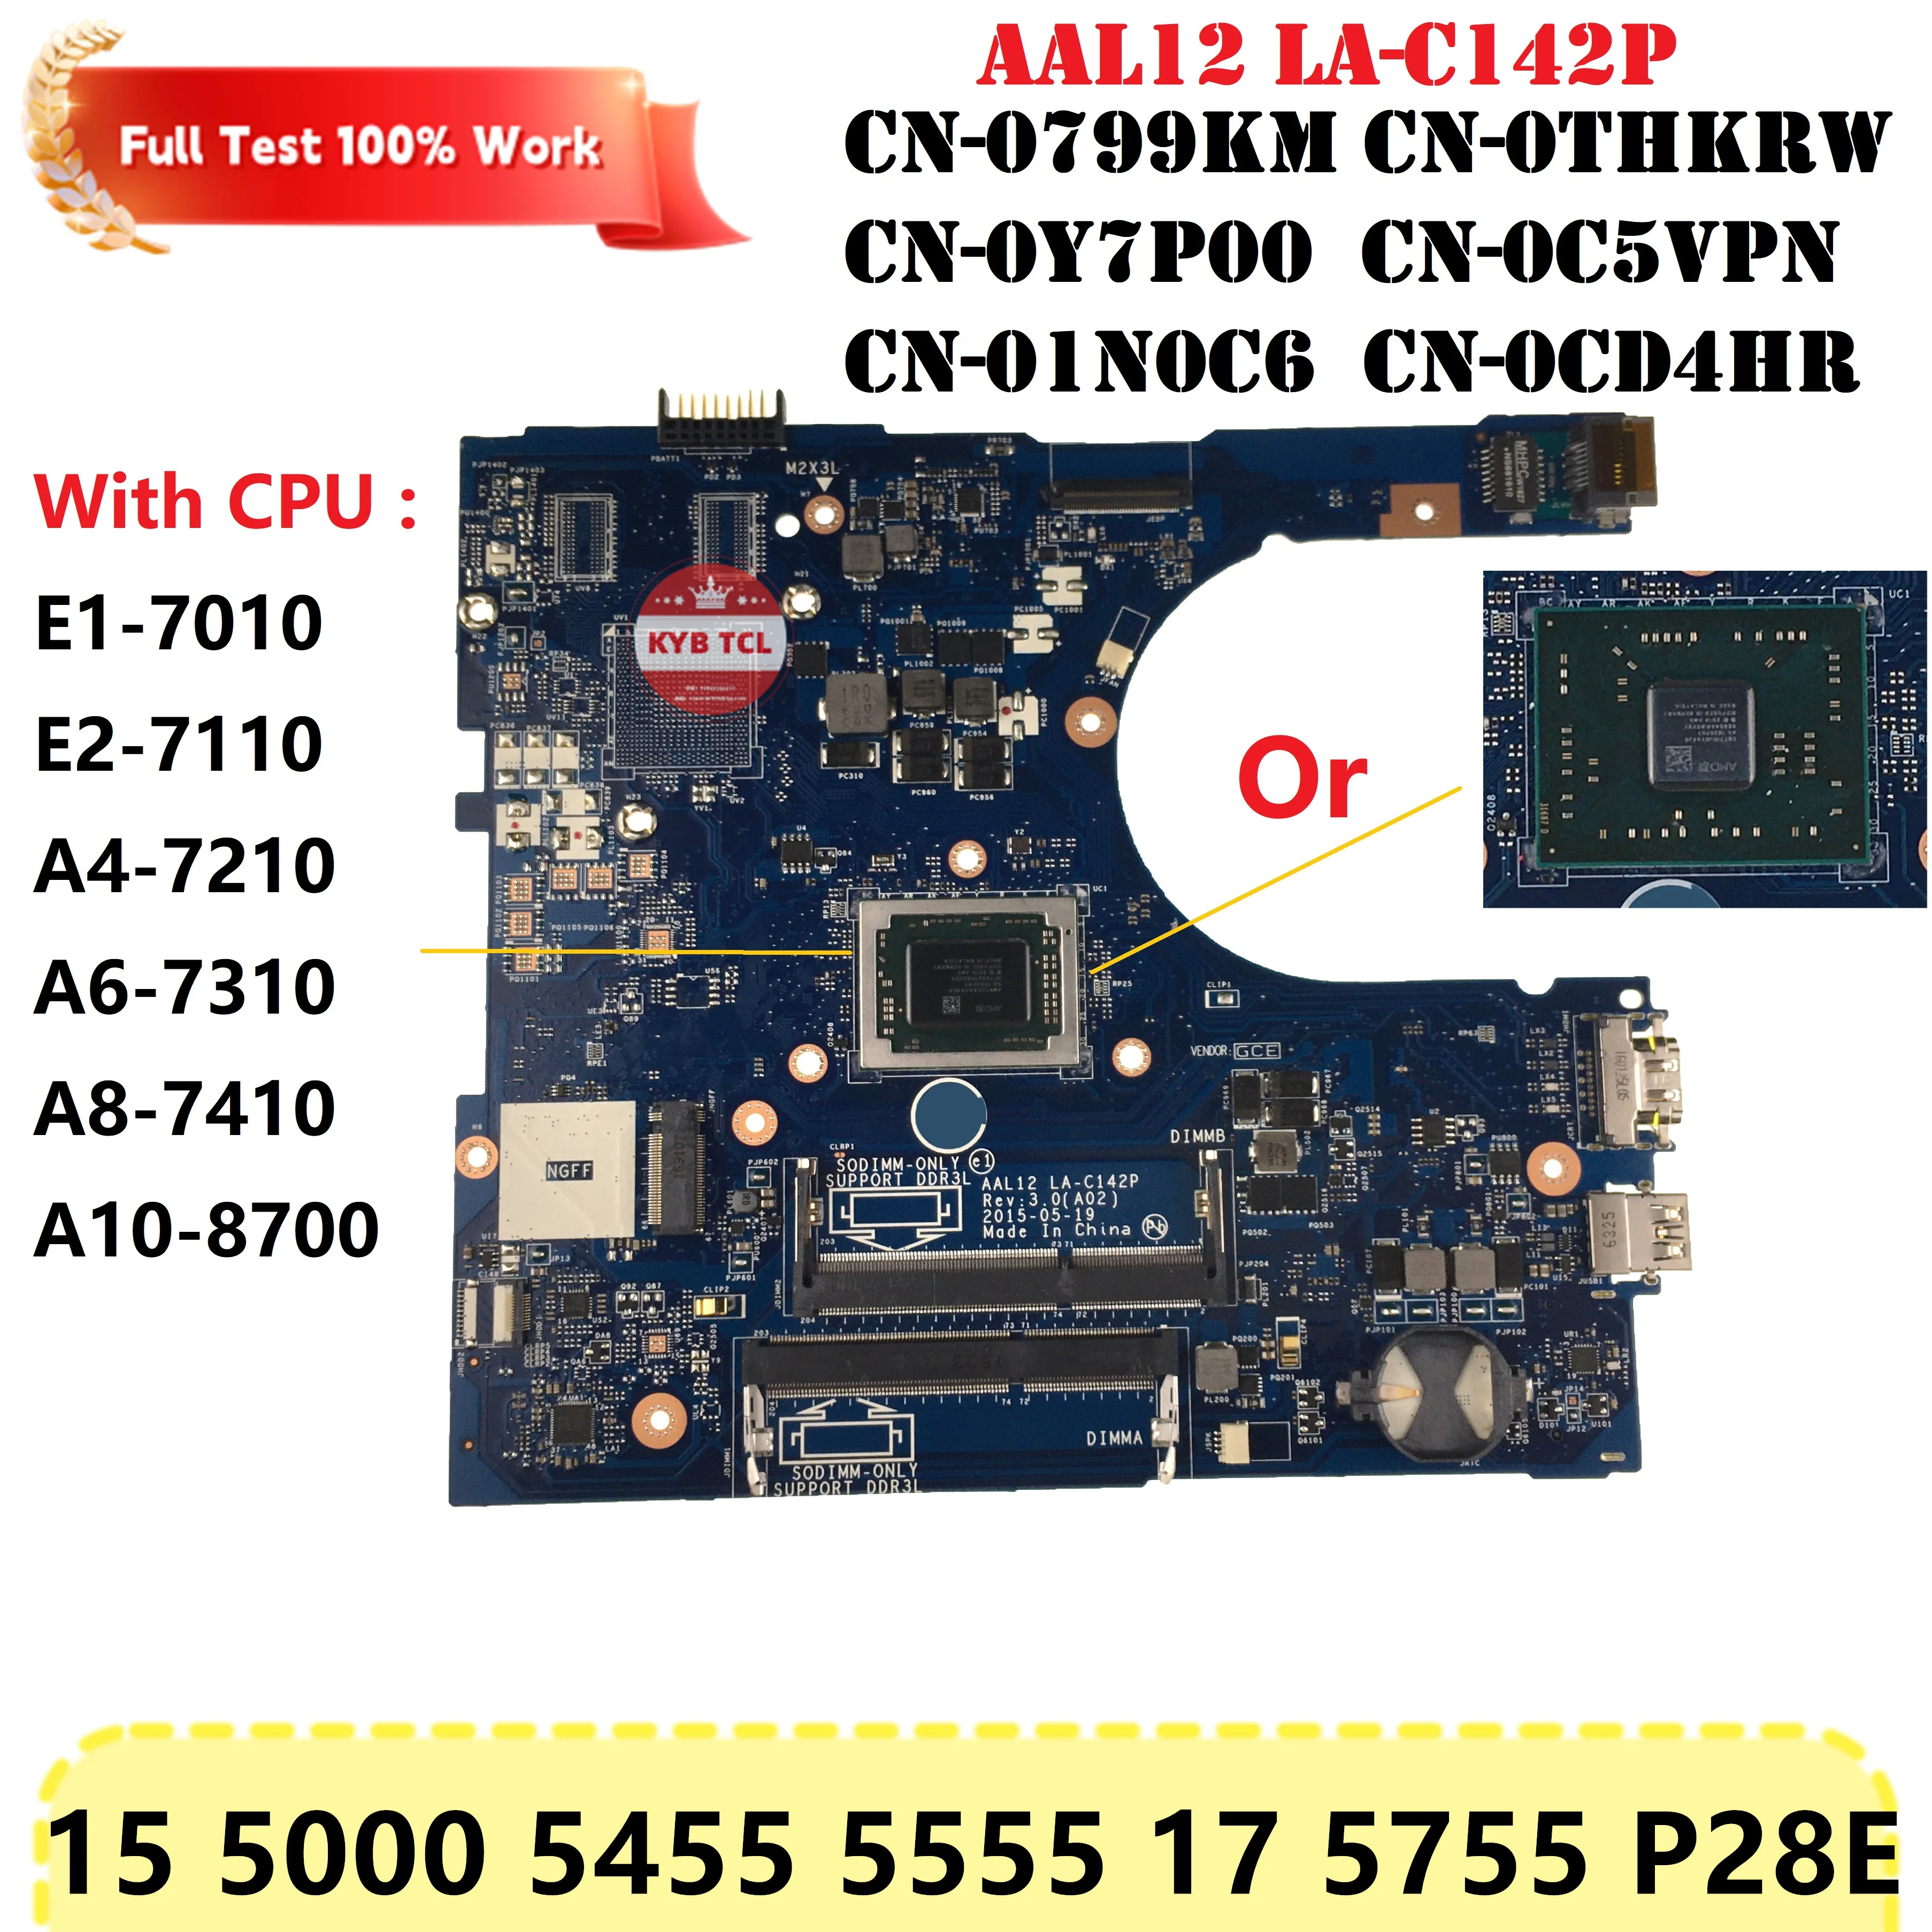 

Материнская плата ноутбука AAL12 LA-C142P Dell Inspiron 15 5000 5455 5555 17 5755 P28E с материнской платой процессора E1 E2 A4 A6 A8 A10 CN-0799KM 0THKRW 0Y7P00 0C5VPN 01N0C6 0CD4HR CN-0THKRW CN-0Y7P00 CN-0C5VPN